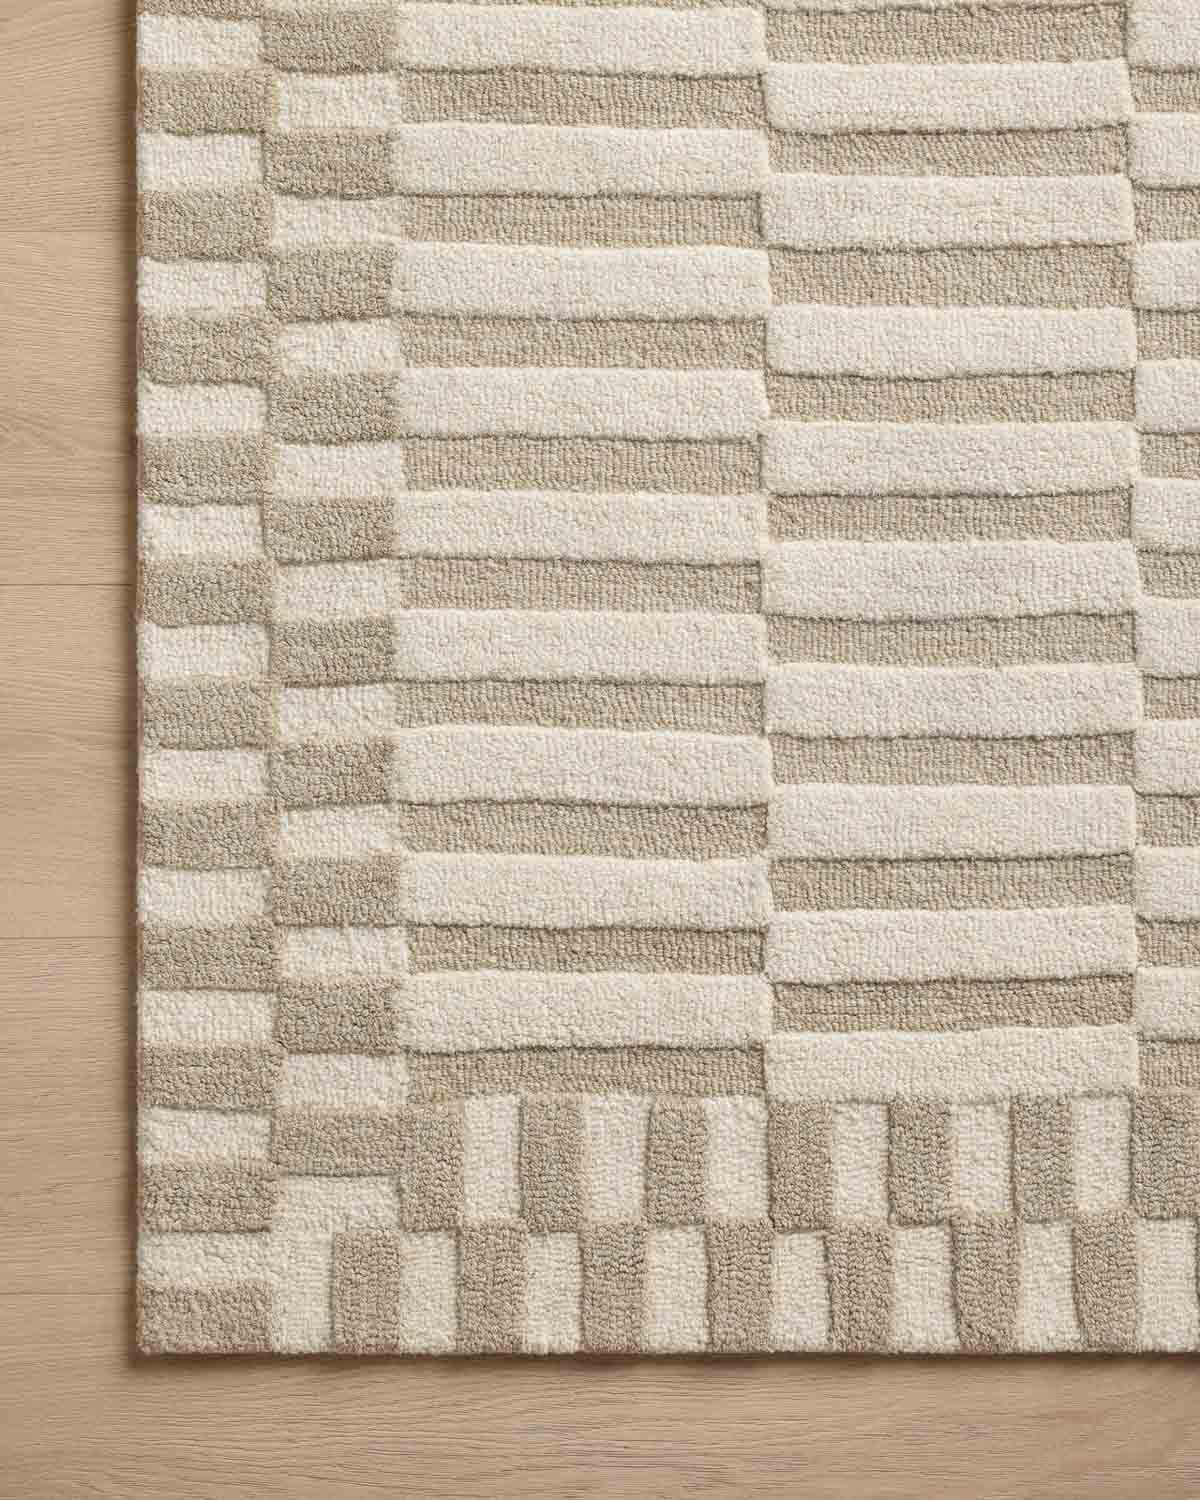 Neutral geometric rug